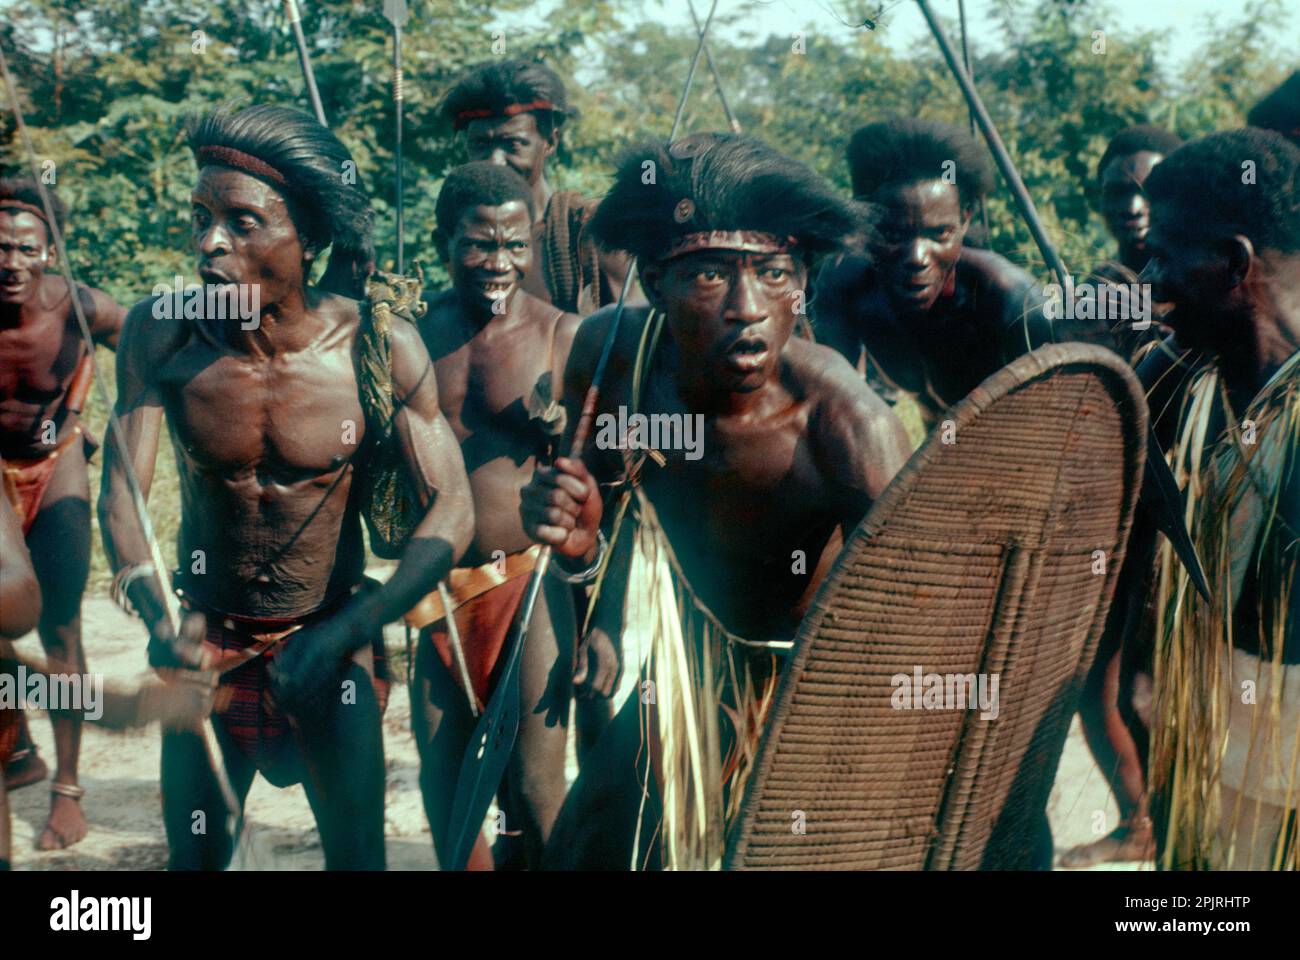 Festivités pour l'indépendance du Congo, 1960. Hommes du groupe ethnique Kela (parlant un linguage mongo) dansant avec lance et bouclier tressé. Banque D'Images